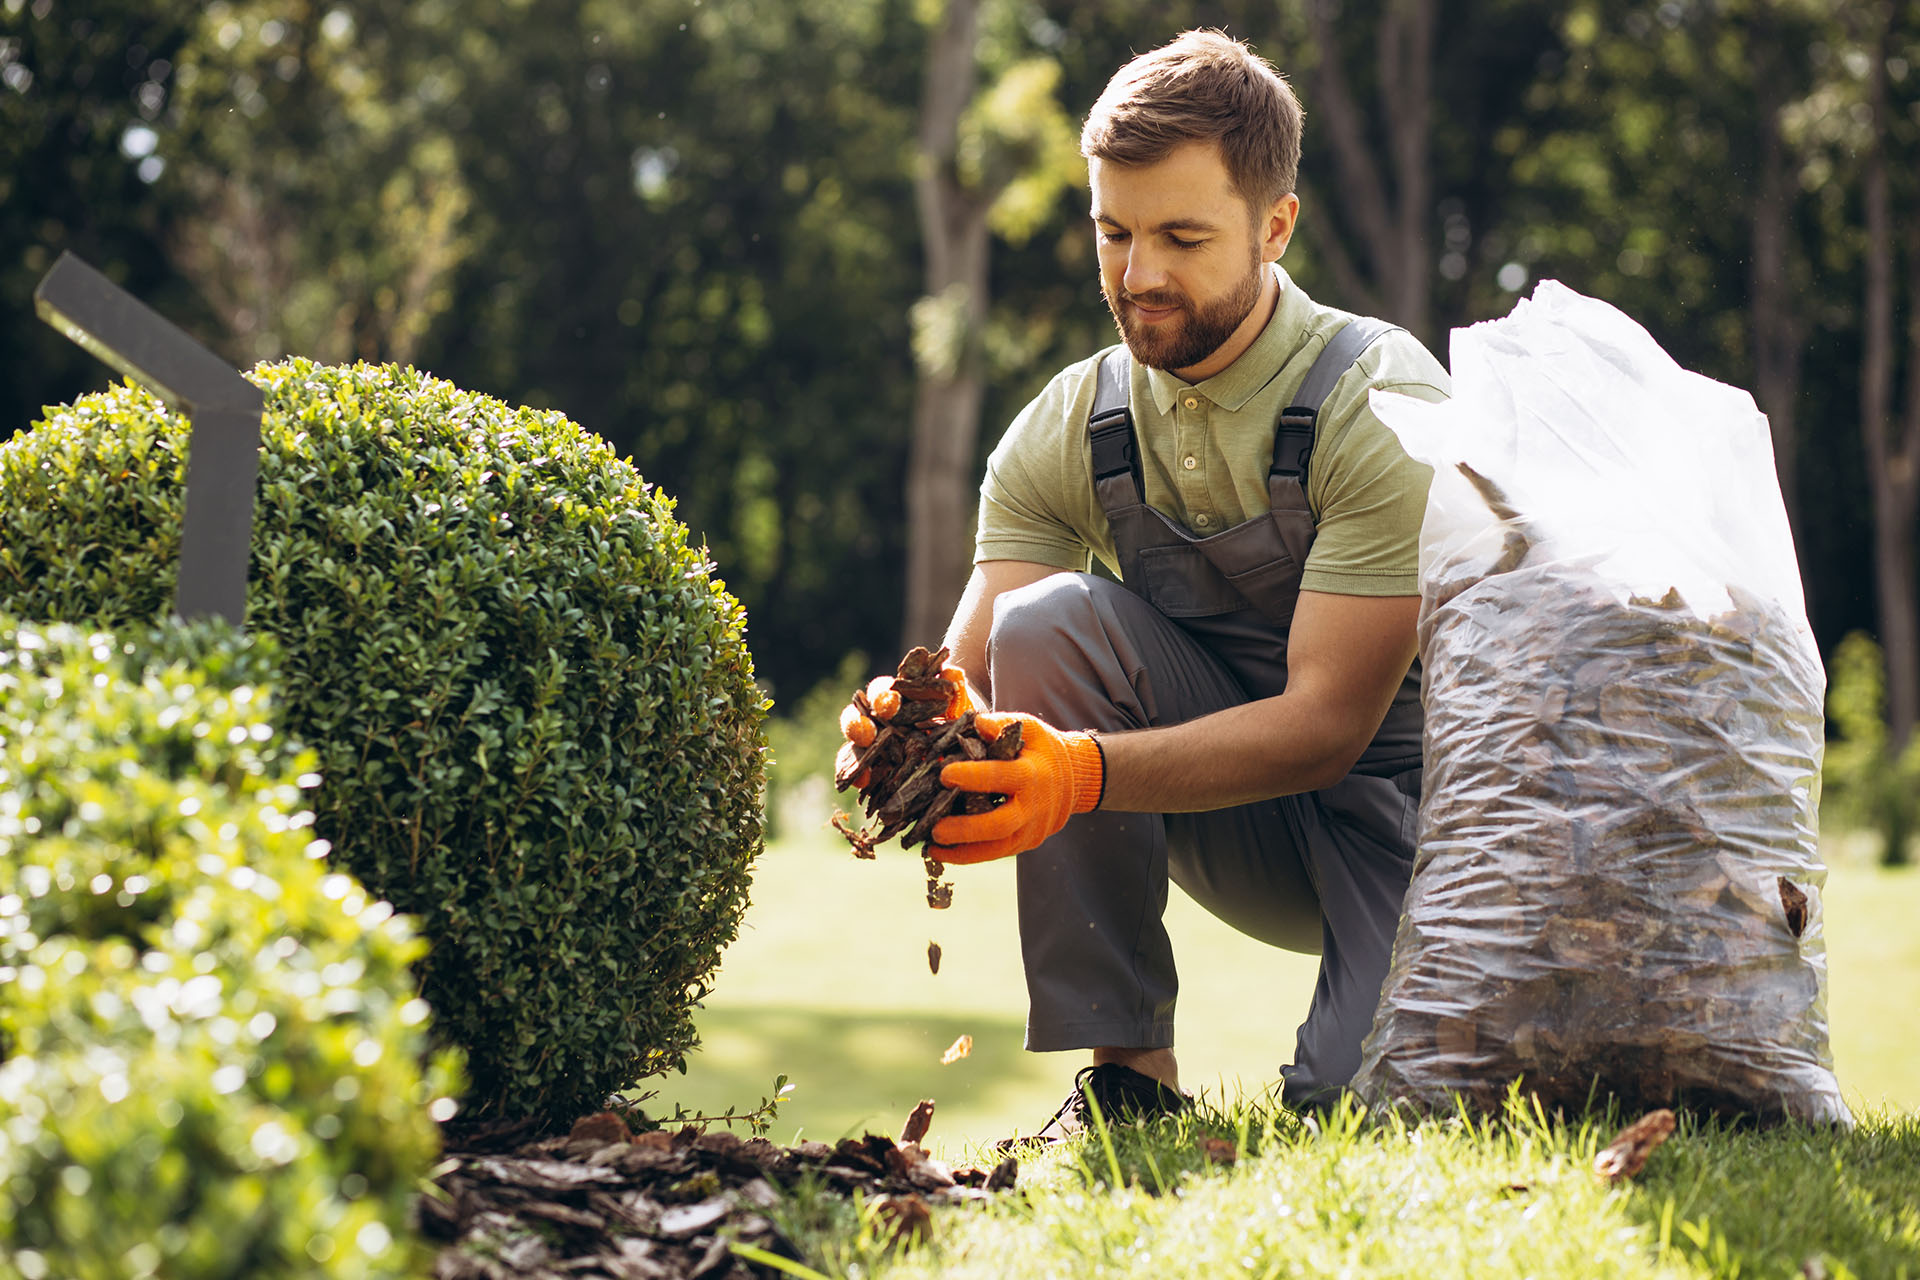 Gartenpflege - Ihr Garten ist bei uns in guten Händen. Unser fachkundiges Team kümmern sich ganzjährig und professionell um die Gartenarbeit an Ihrem Standort